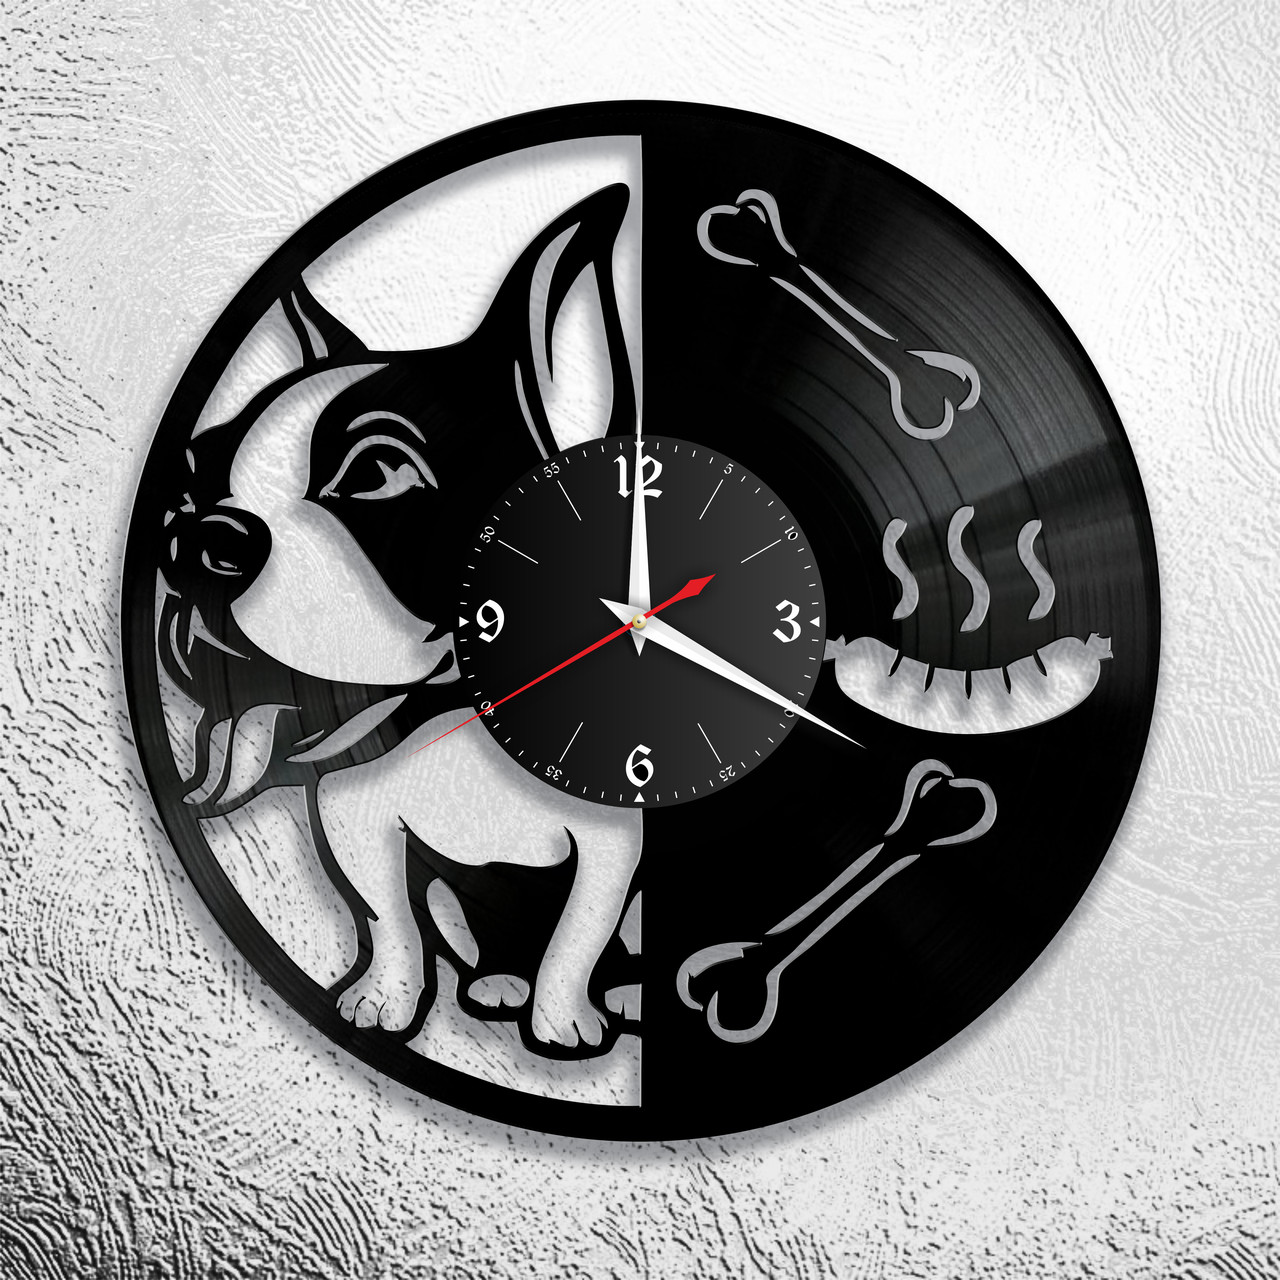 Оригинальные часы из виниловых пластинок "Собака" версия 3, фото 1